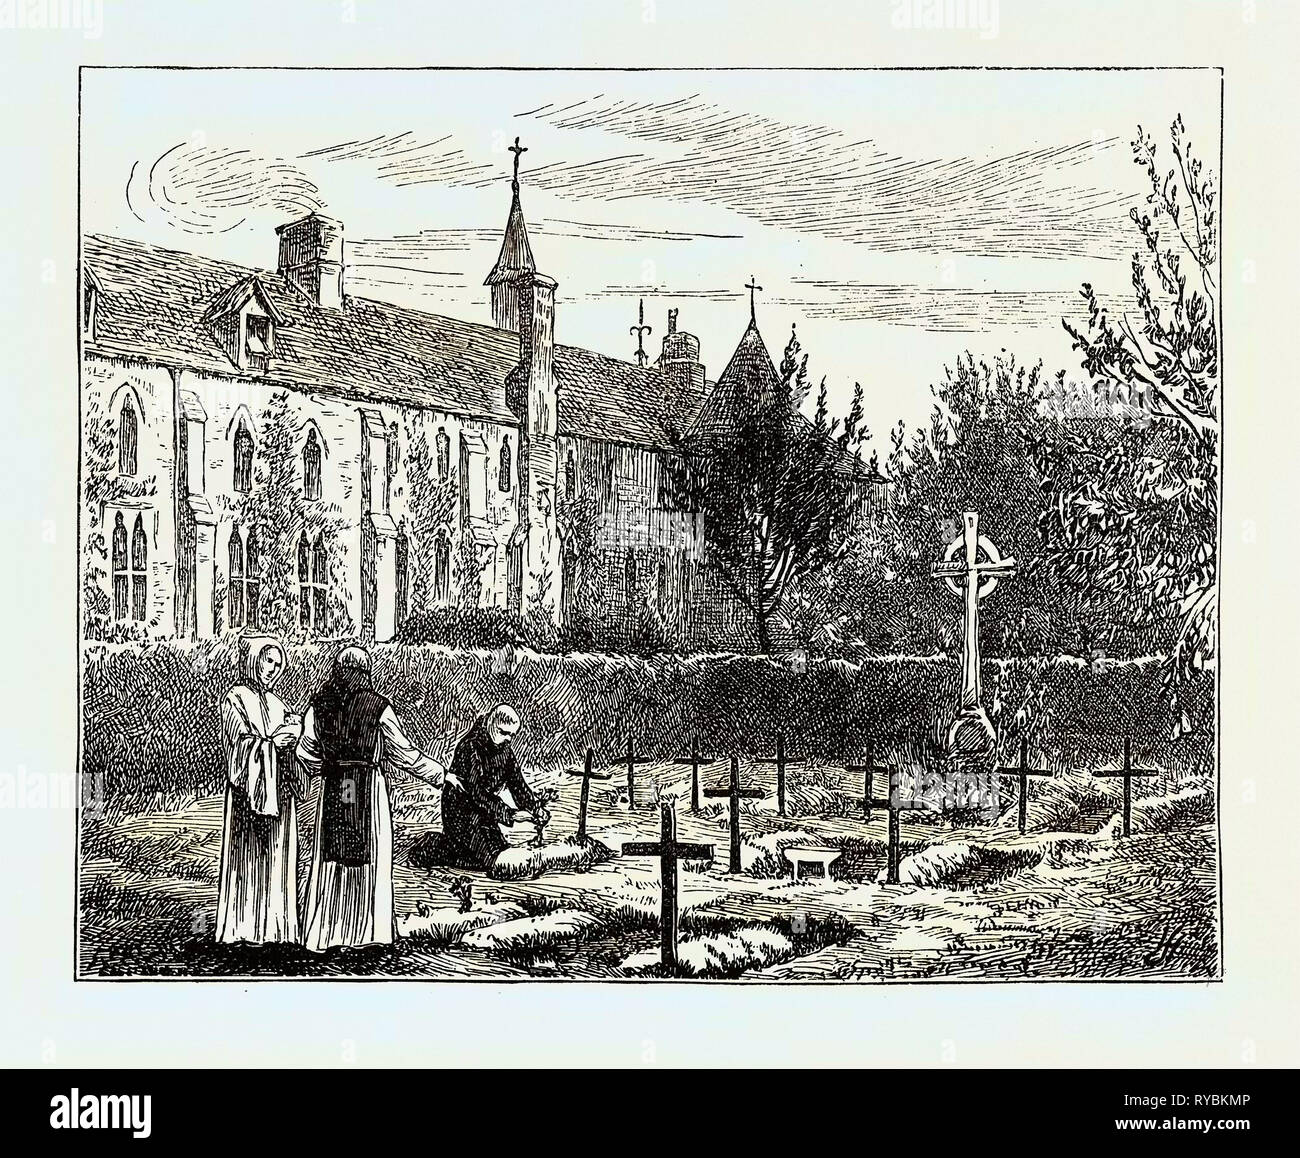 La vida monástica en Inglaterra: El cementerio Foto de stock